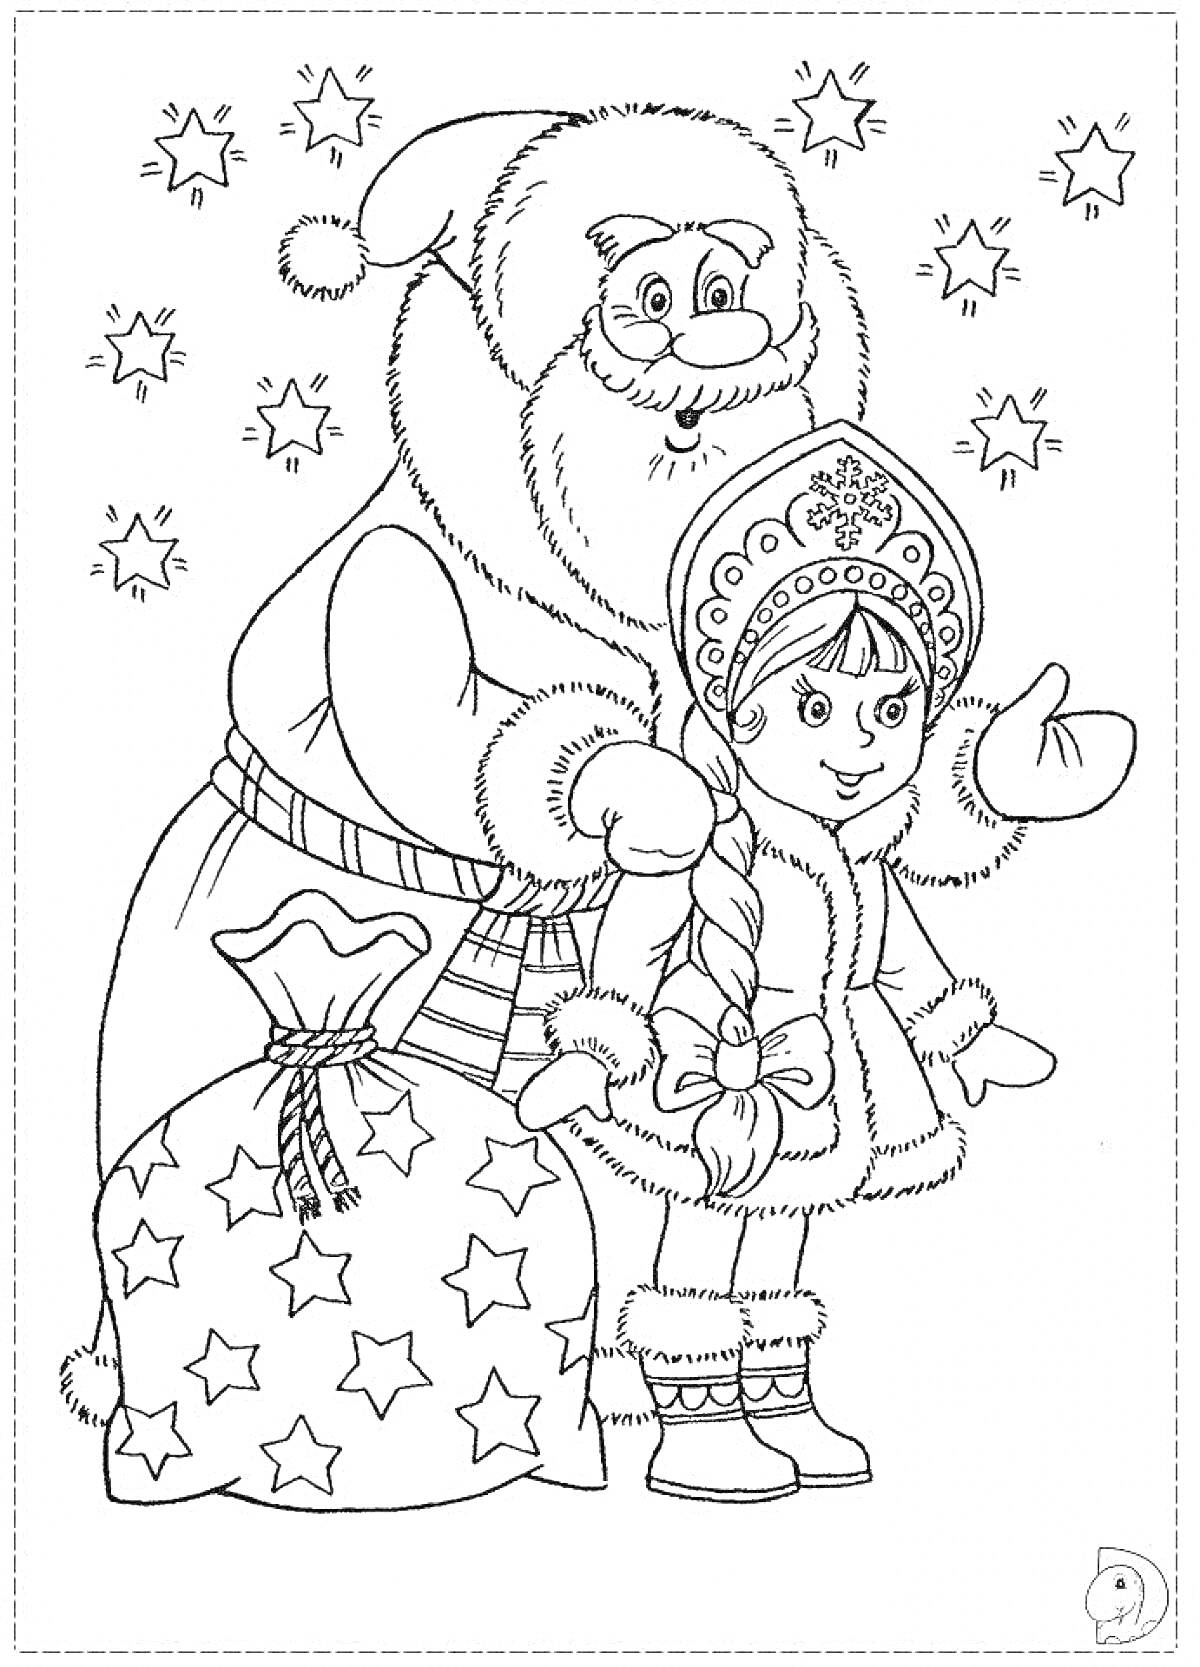 РаскраскаДед Мороз с внучкой Снегурочкой рядом с мешком подарков и звездочками на фоне